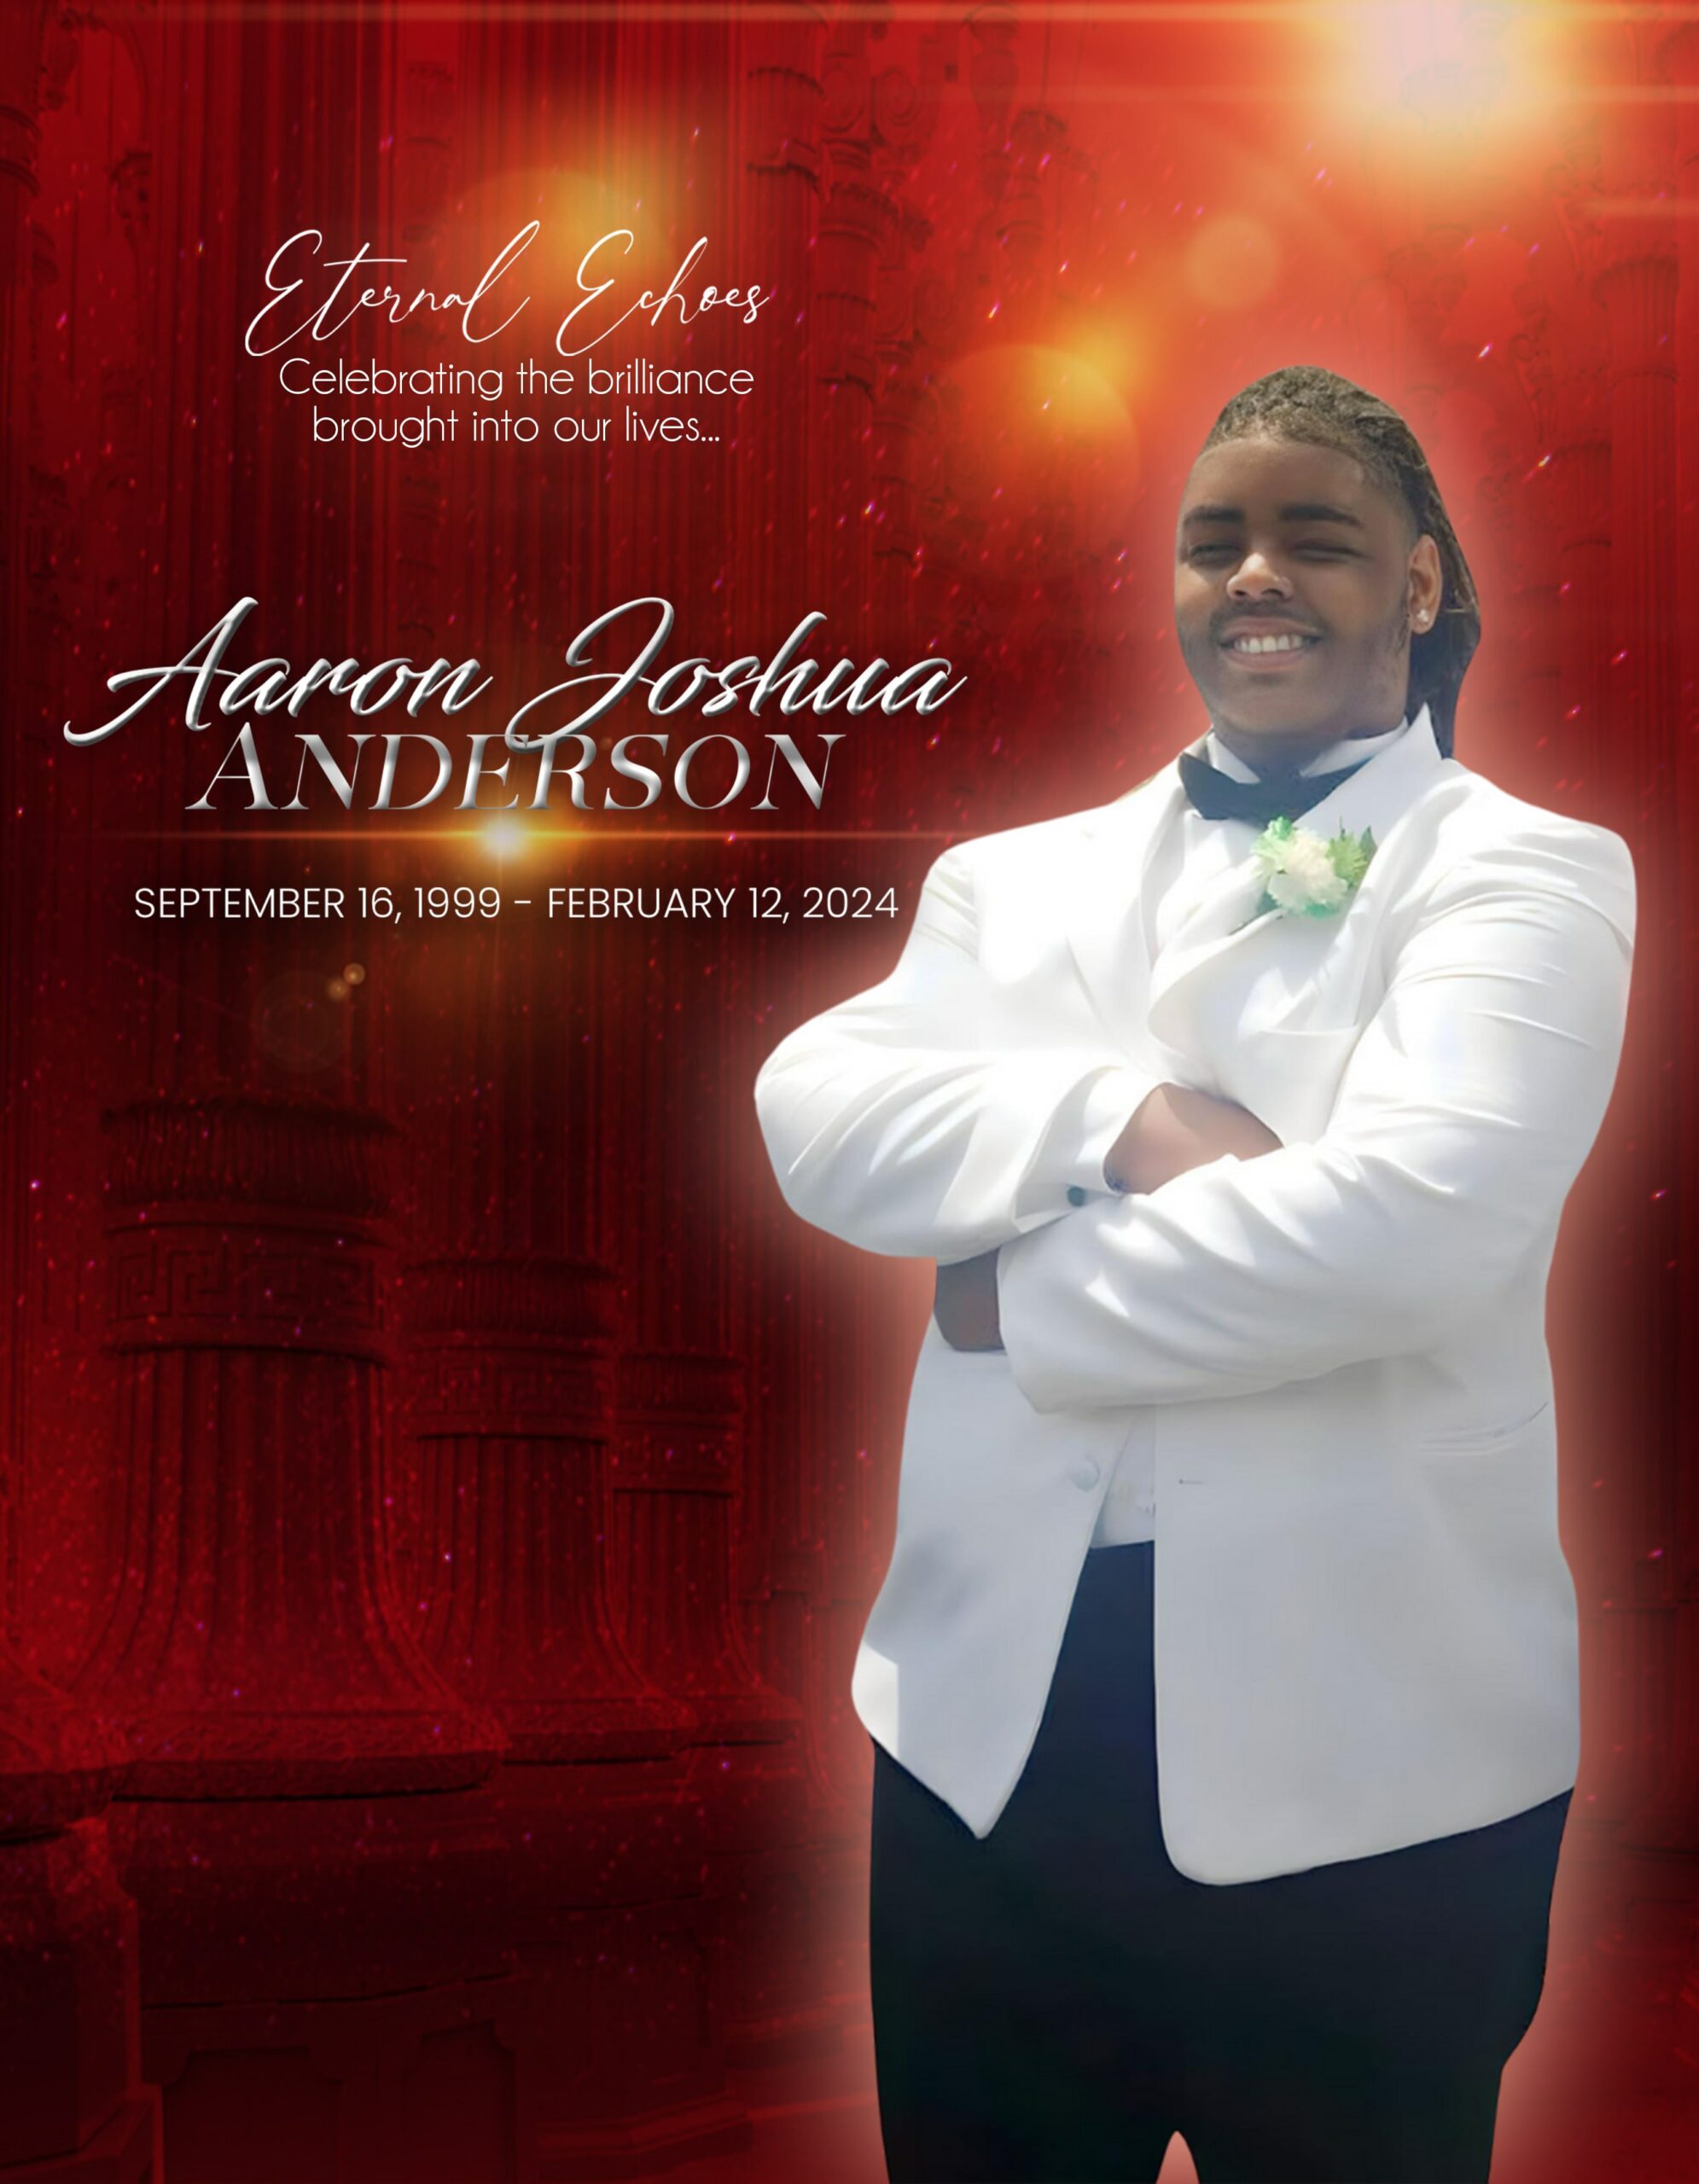 Aaron Joshua Anderson 1999 – 2024